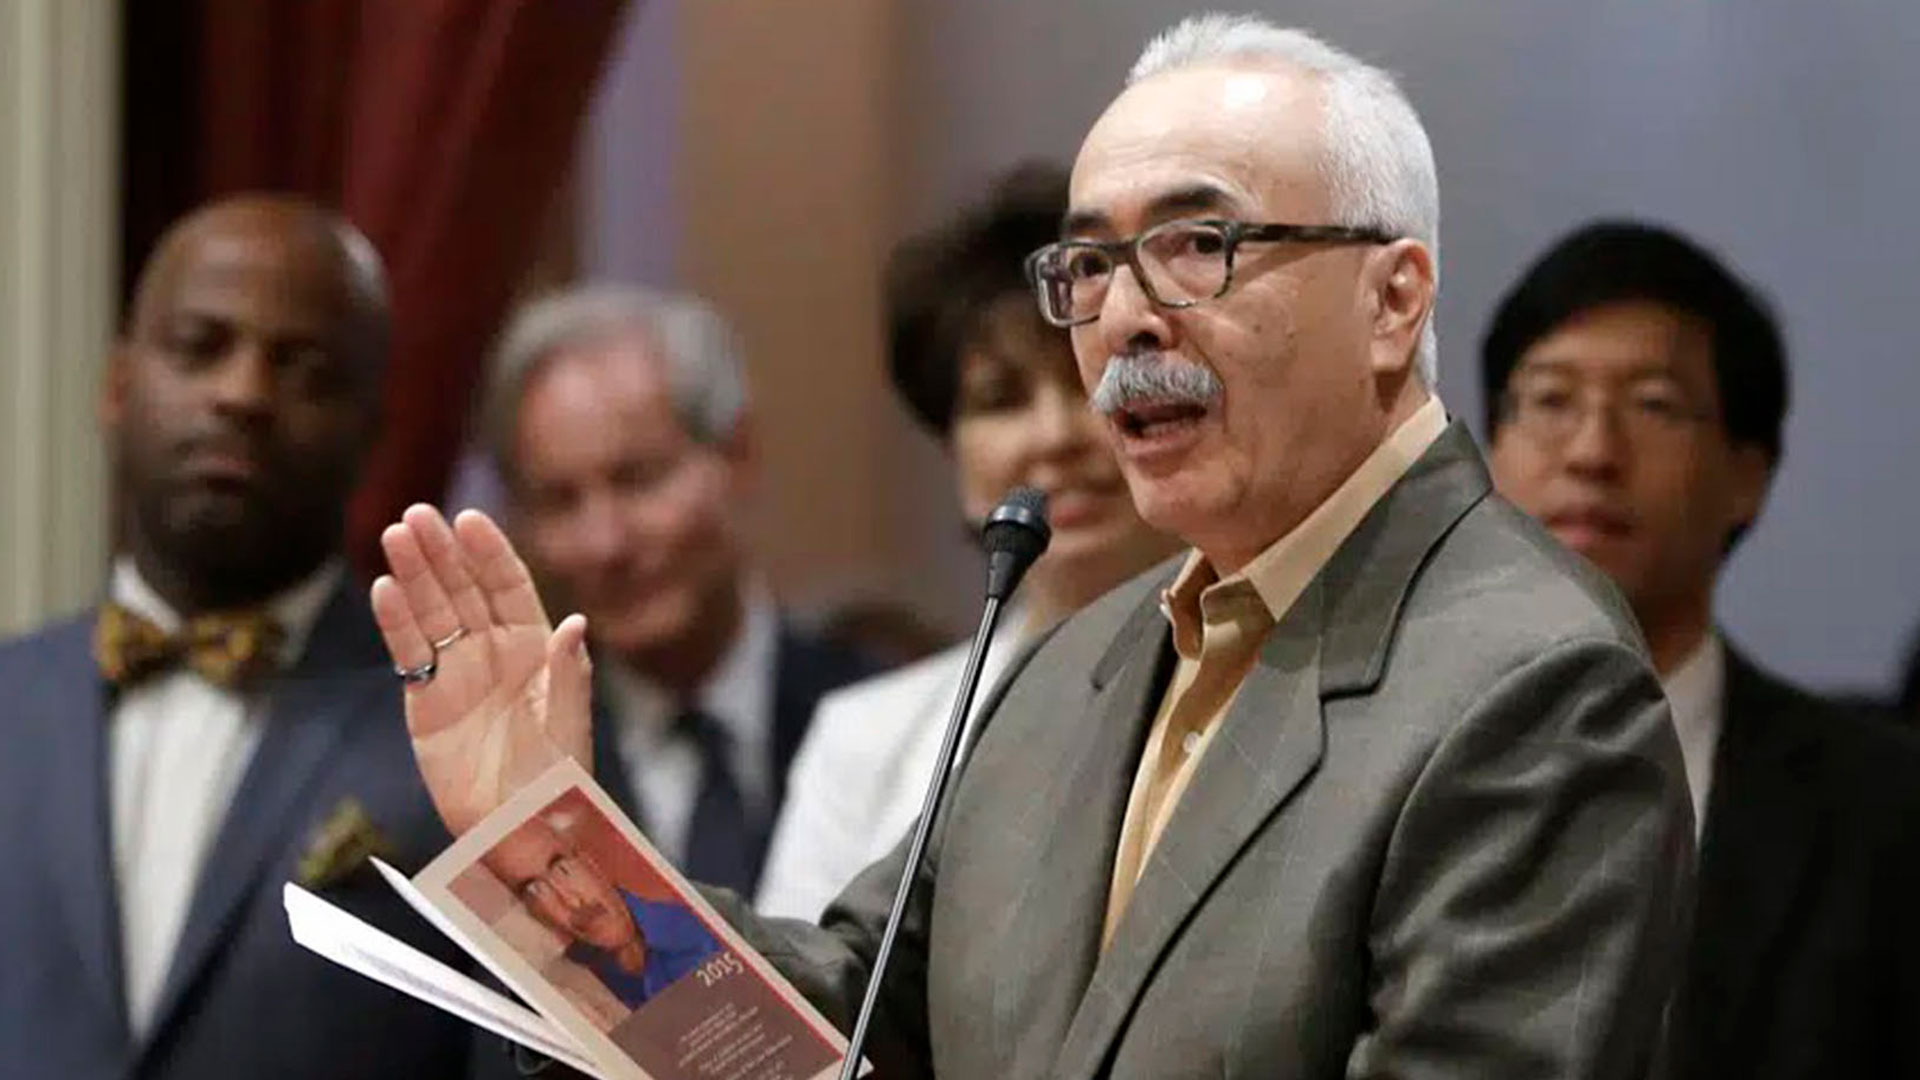 Juan Felipe Herrera, el primer poeta latino laureado en Estados Unidos con la Medalla Frost, lee uno de sus poemas ante el Senado del Estado de California el 6 de julio de 2015 (Foto de archivo: AP Photo/ Rich Pedroncelli)